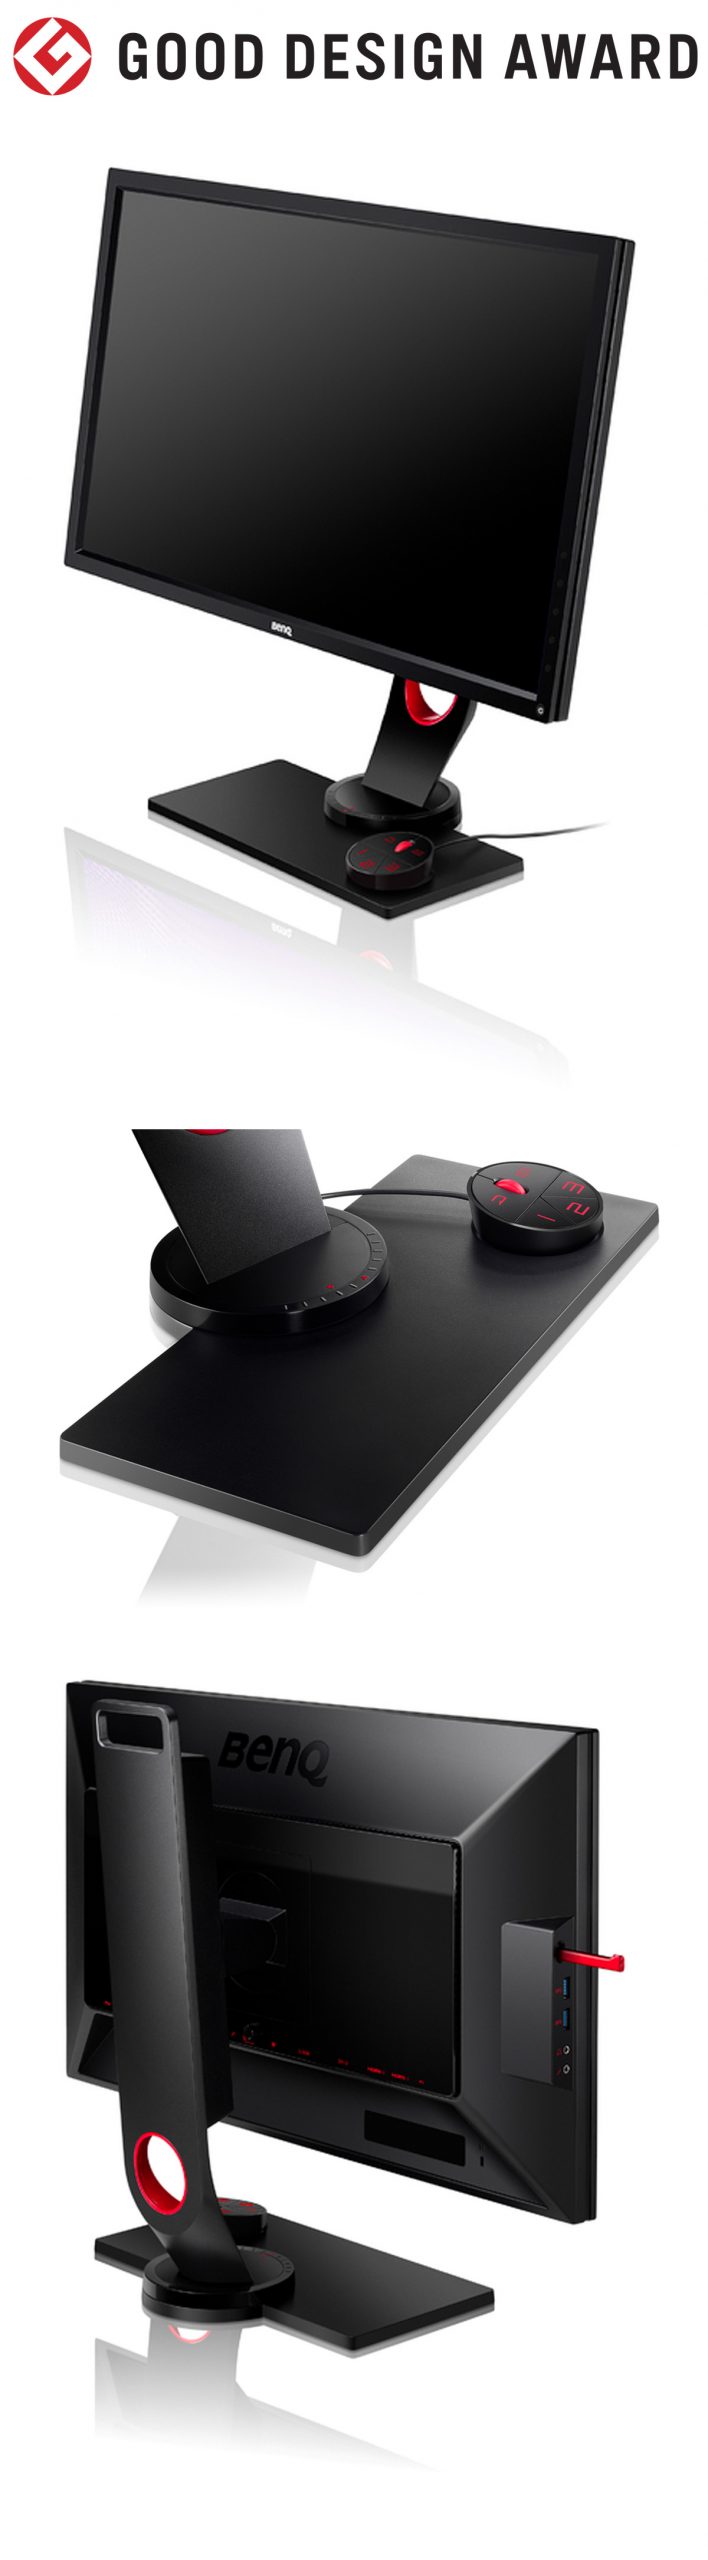 【日本】明基BenQ XL30系列游戏显示器获颁2015年度G-Mark设计大奖（GOOD DESIGN AWARD 2015）